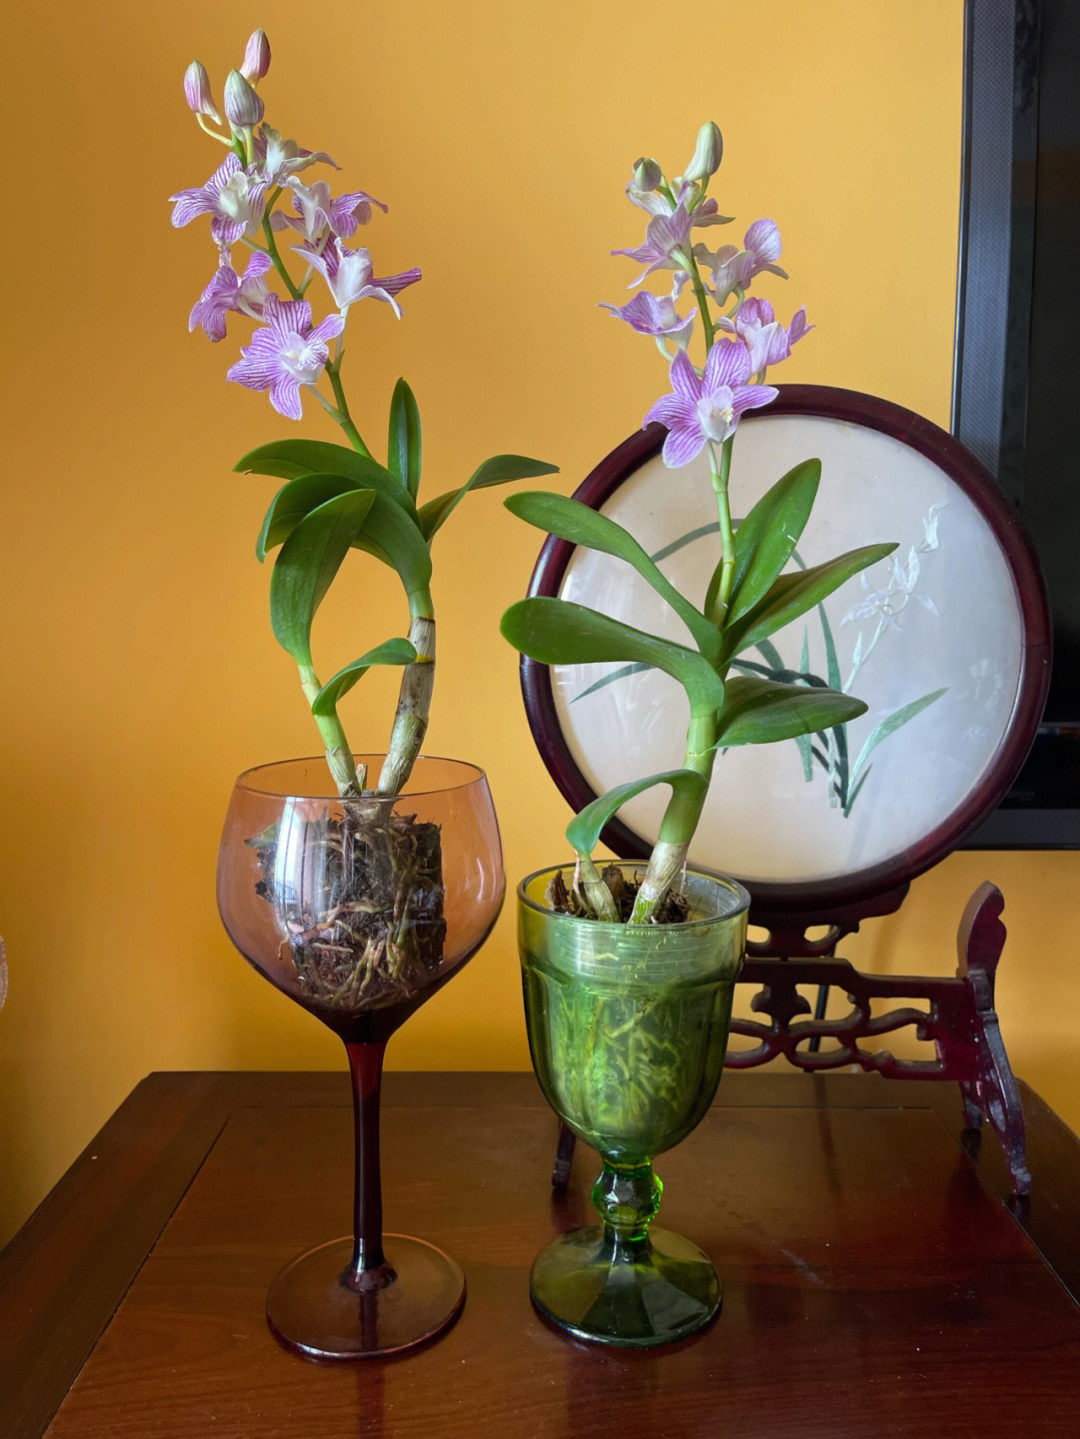 这两株石斛兰的品种叫紫蝶,每周只用浇一次水,每两天用喷壶喷些水滴在